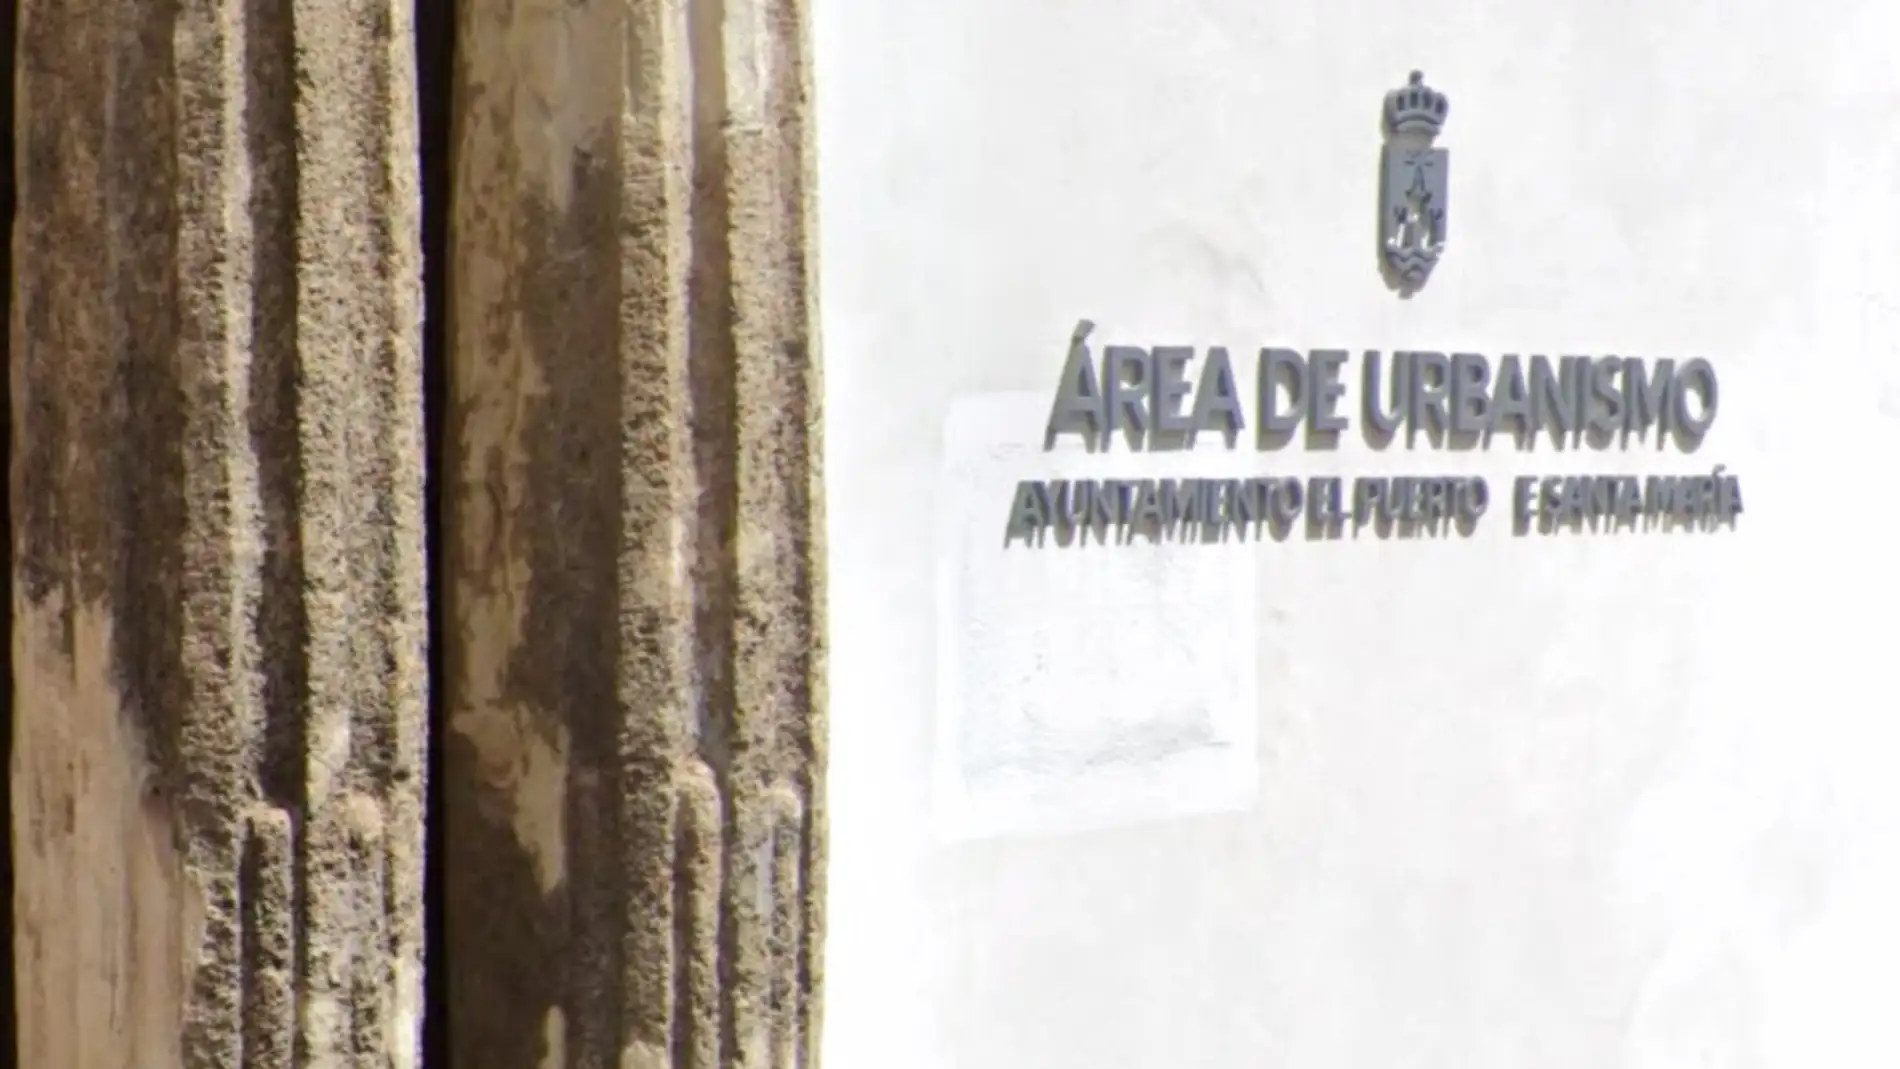 Edificio del área de urbanismo del Ayuntamiento de El Puerto